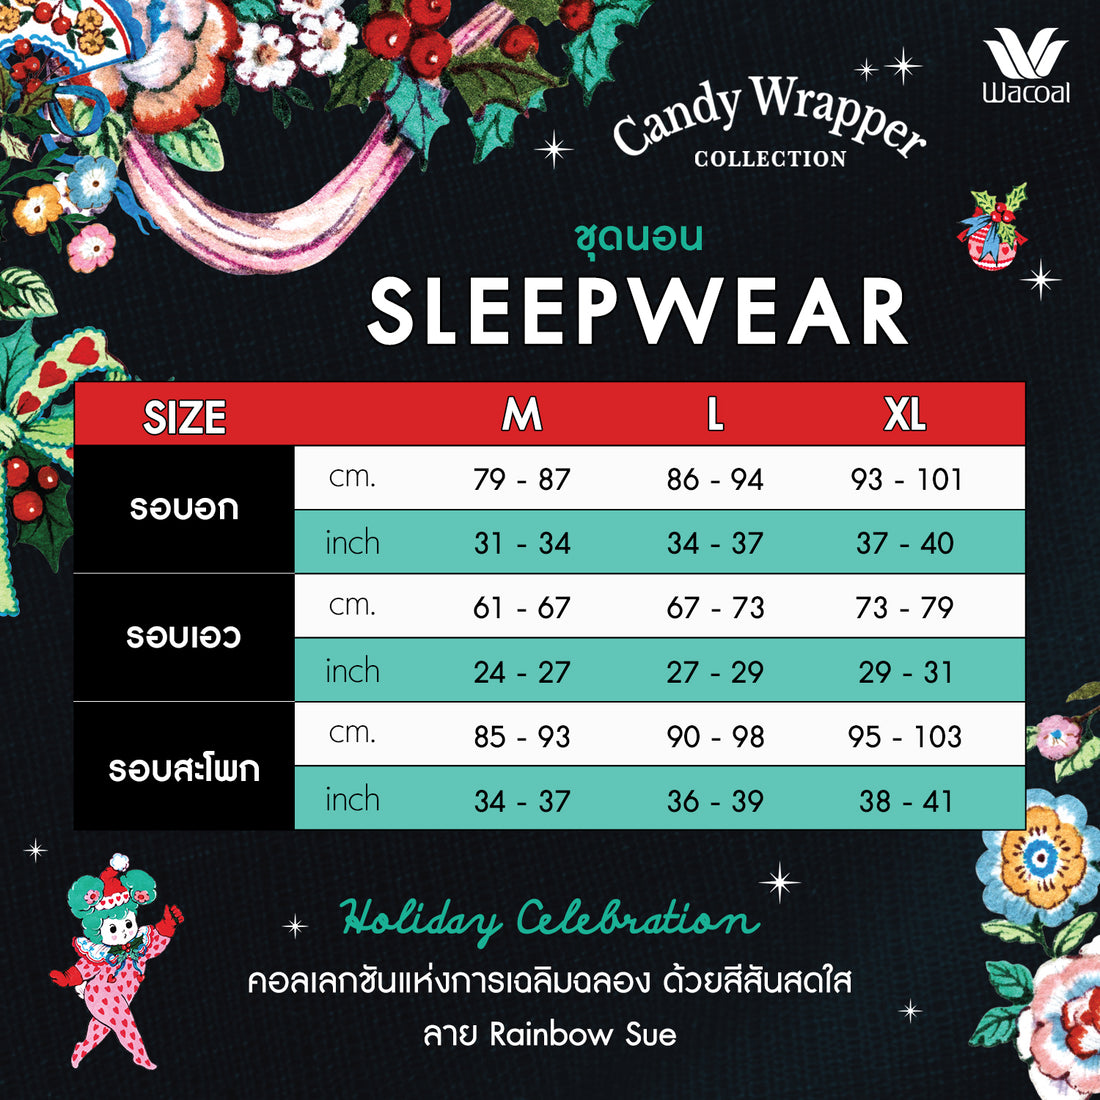 Wacoal x Phannapast: “Candy Wrappers Collection” ชุดนอนเสื้อแขนยาว กางเกงขายาว รุ่น WN7D24  สีดำ (BL)